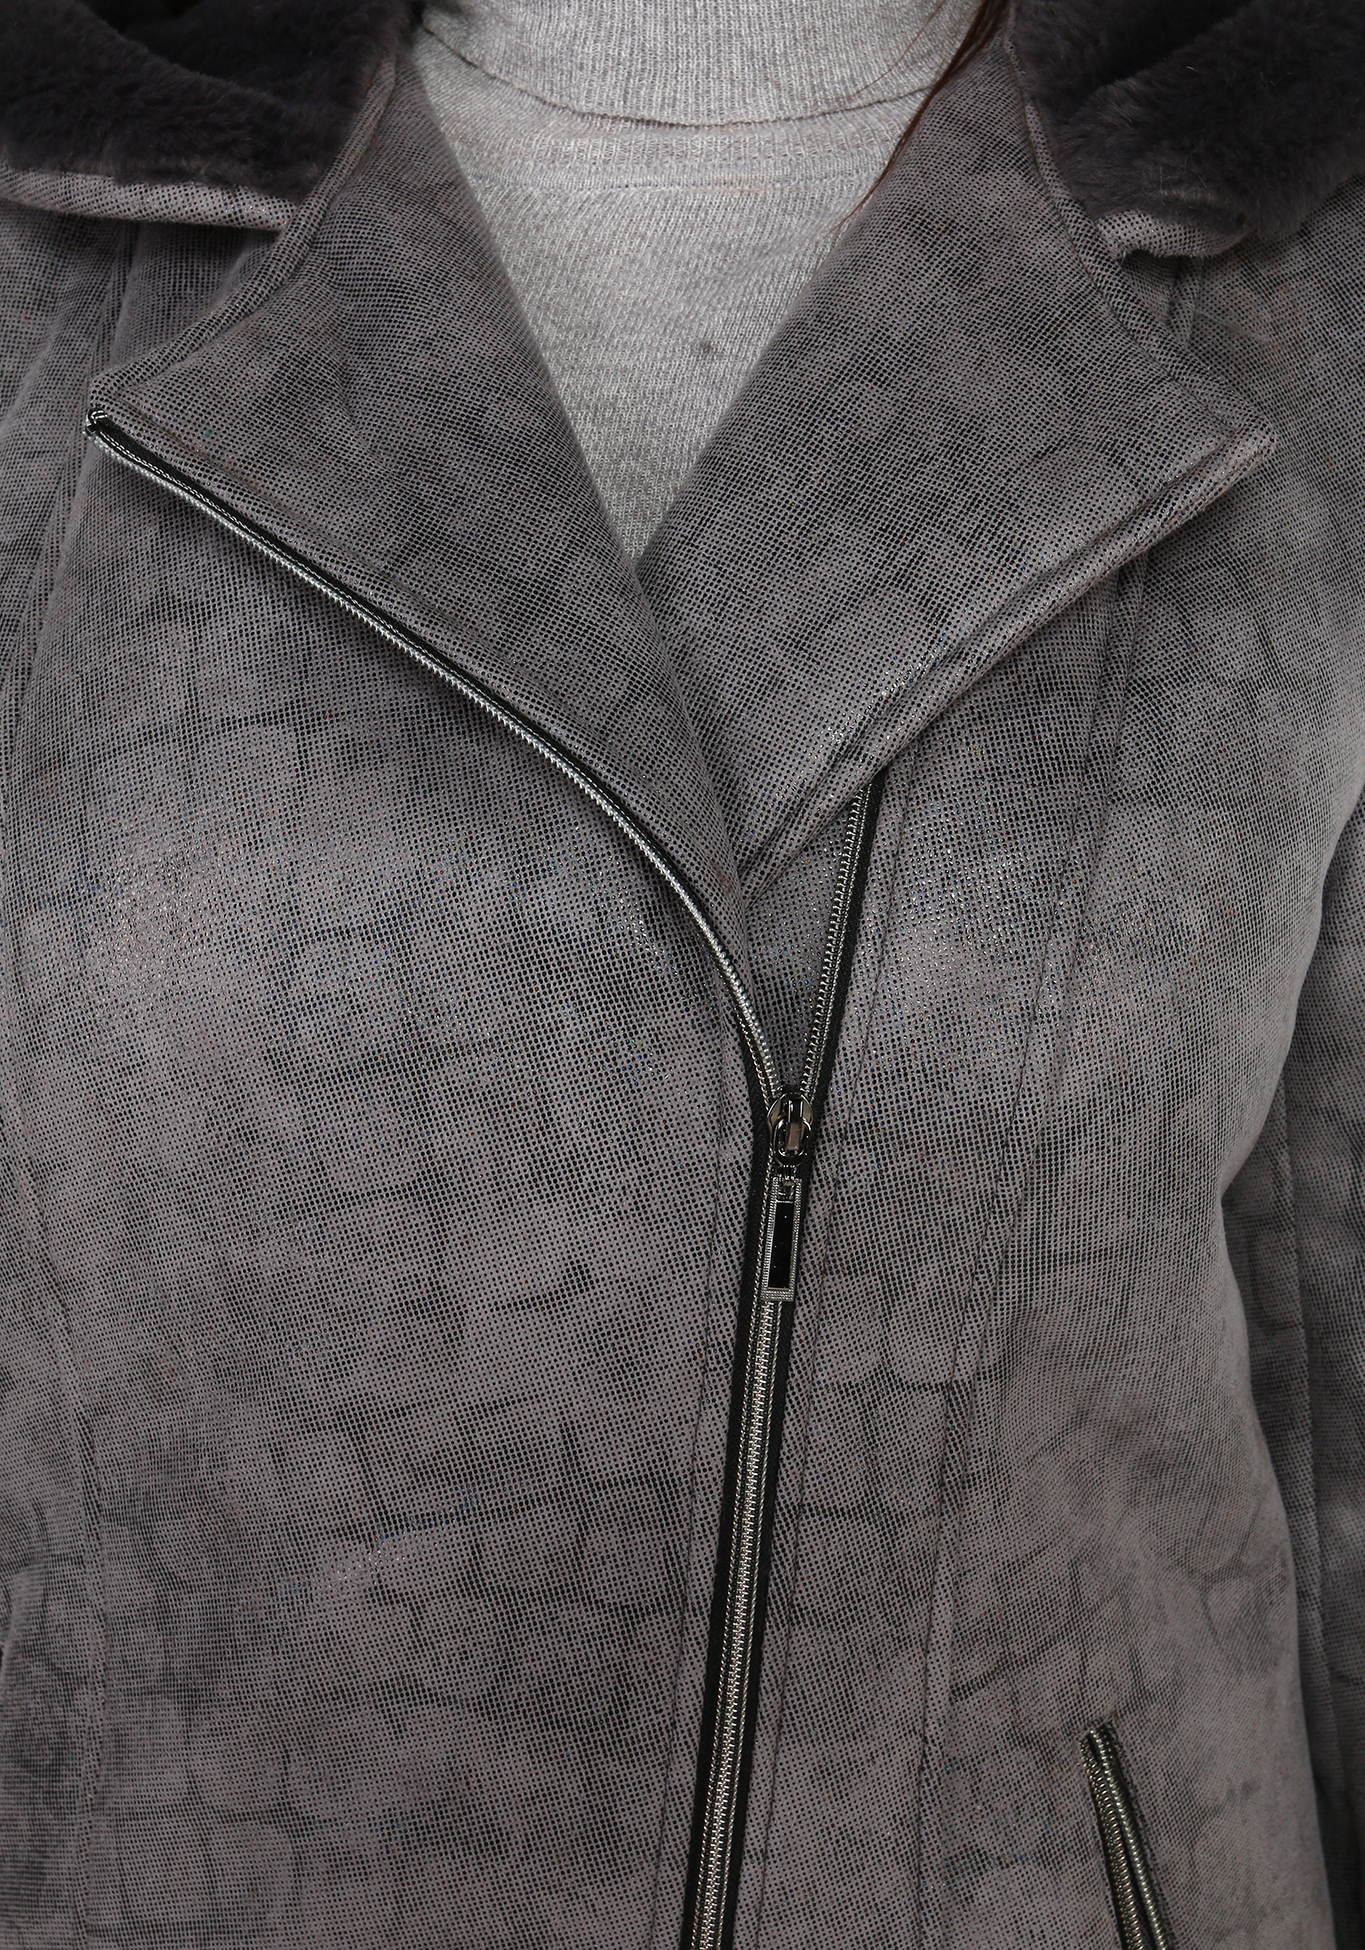 Дубленка женская с карманами и капюшоном Mio Imperatrice, размер 50, цвет терракот - фото 6